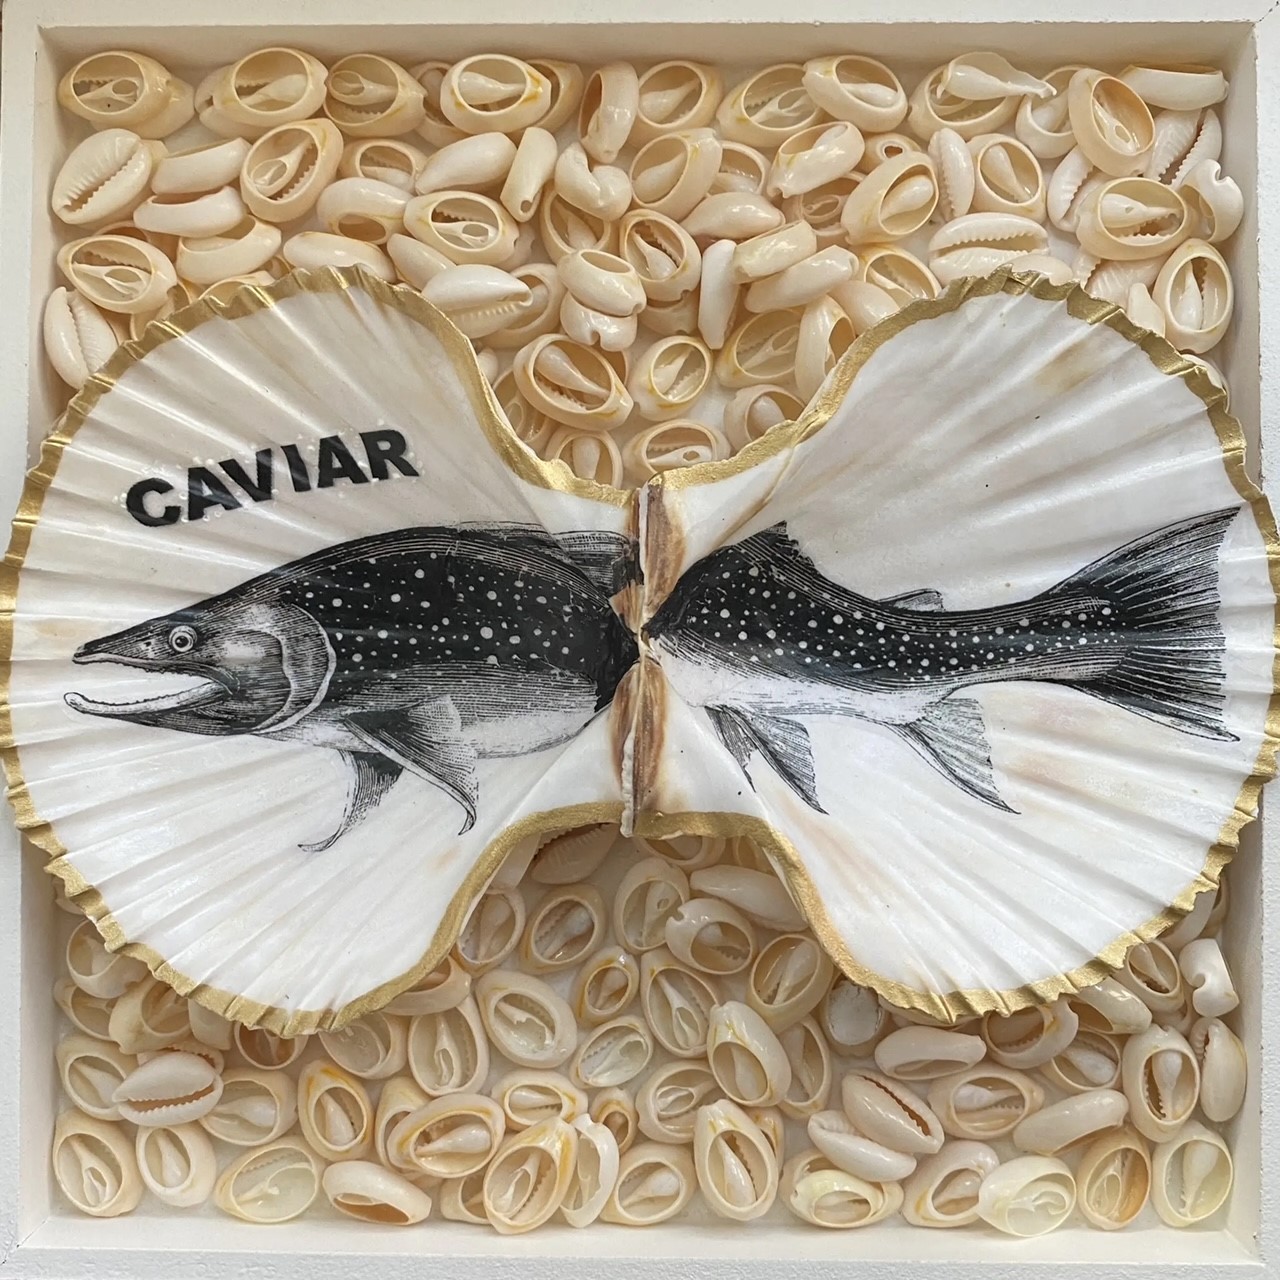 Pétoncle caviar